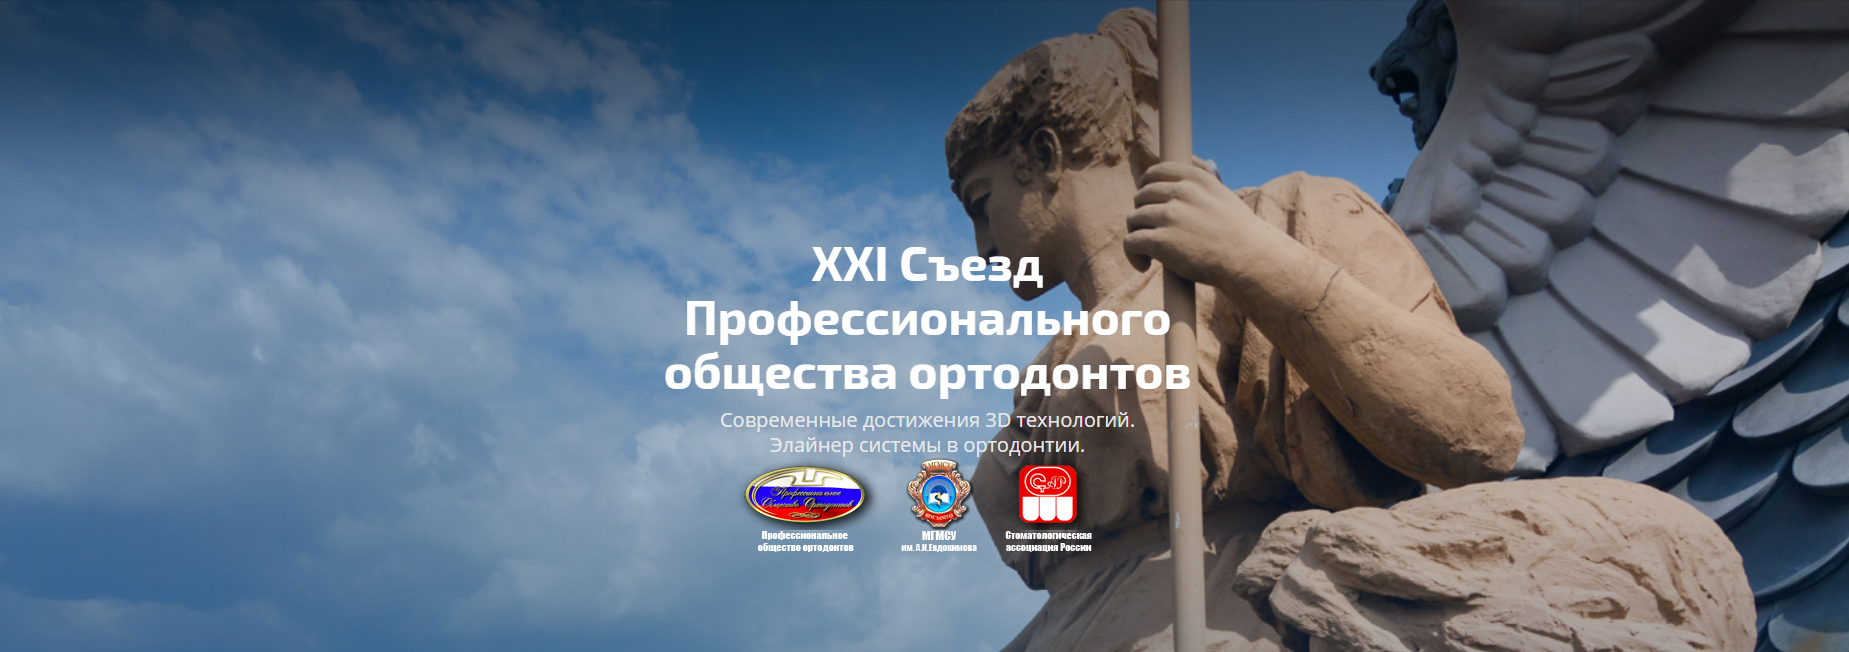 XXI Съезд Профессионального общества ортодонтов в Санкт-Петербурге